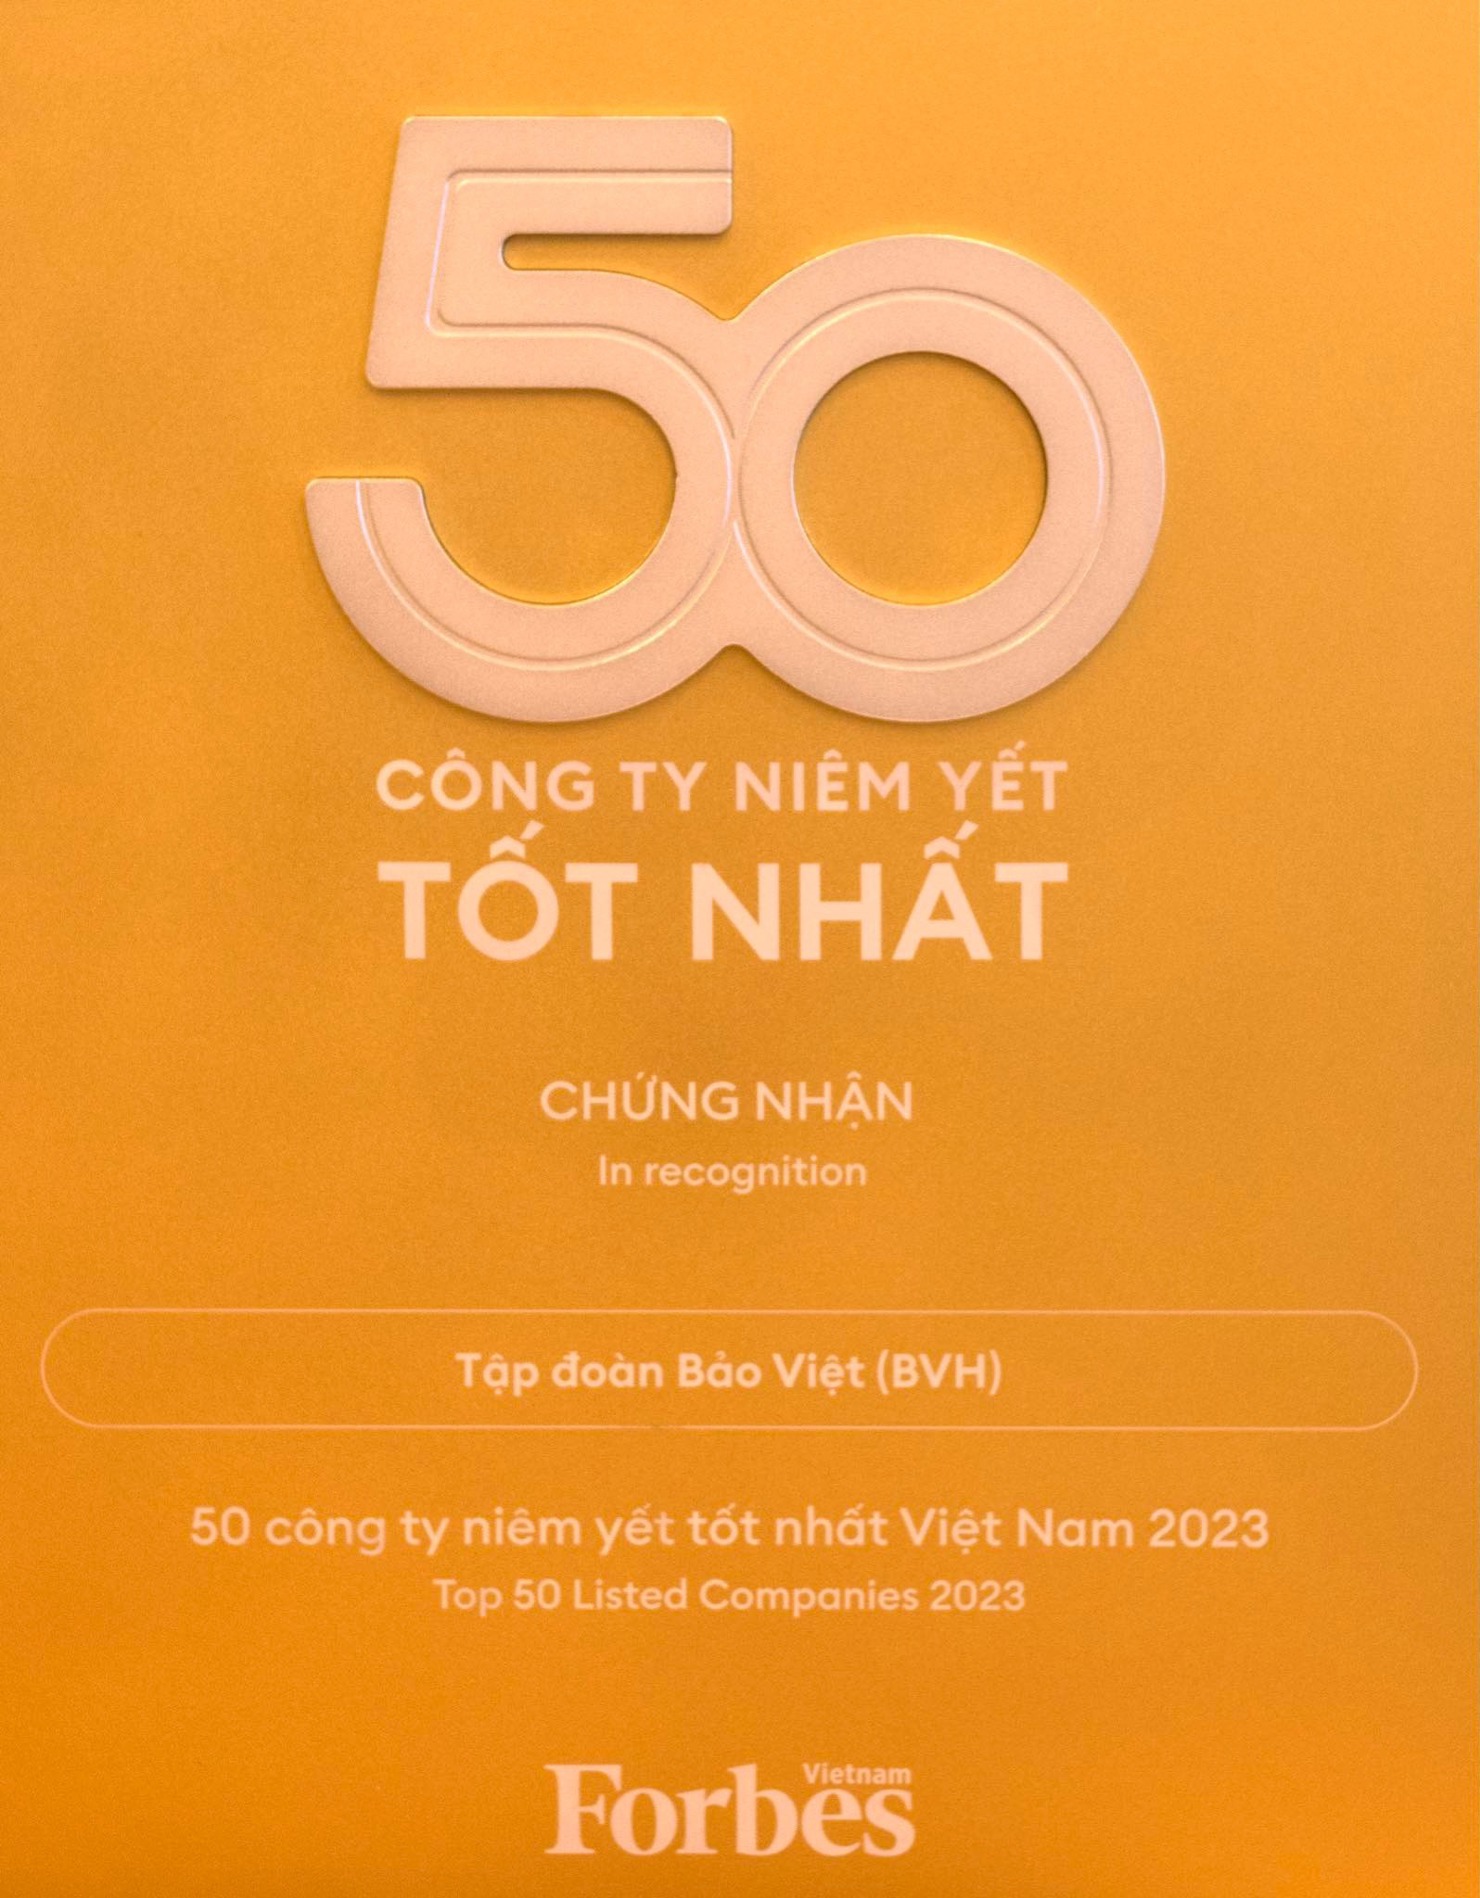 11 năm liên tiếp, Bảo Việt nằm trong “Danh sách 50 công ty niêm yết tốt nhất”  - Ảnh 1